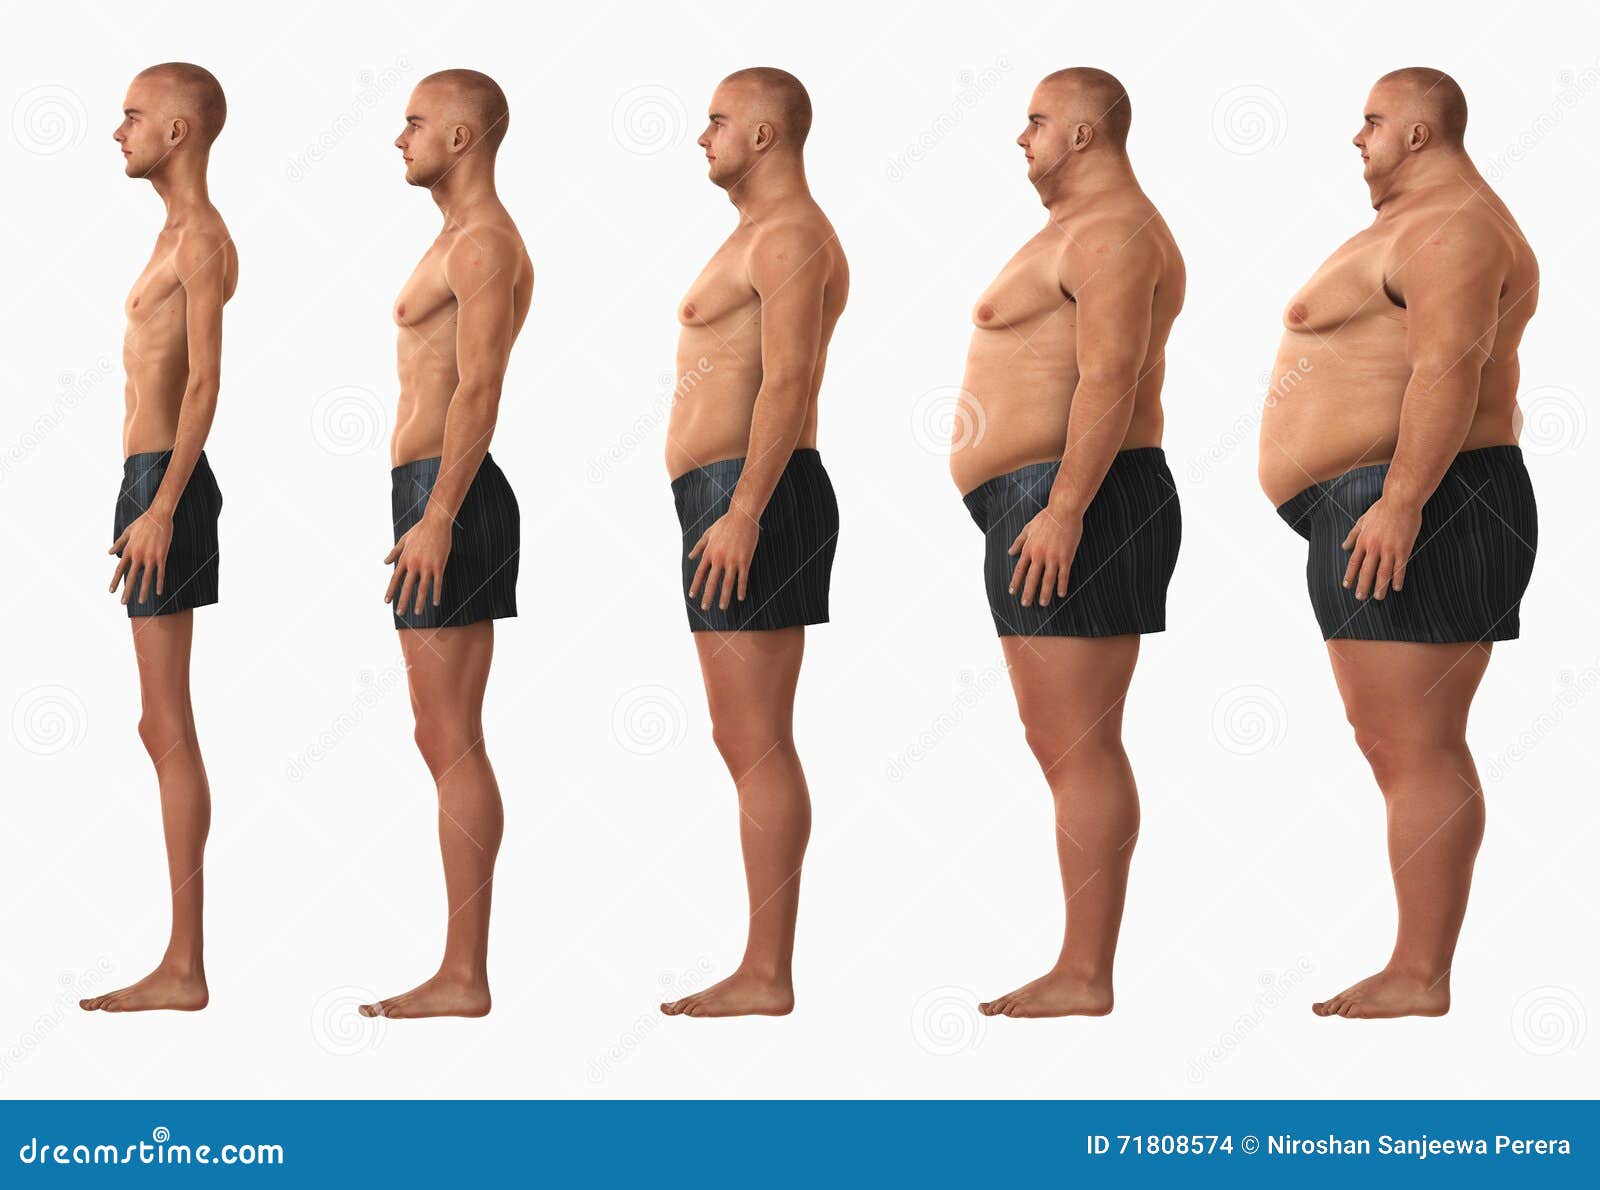 Categorías índice De Corporal BMI Del Hombre Foto de archivo - Imagen de gane, significativo: 71808574